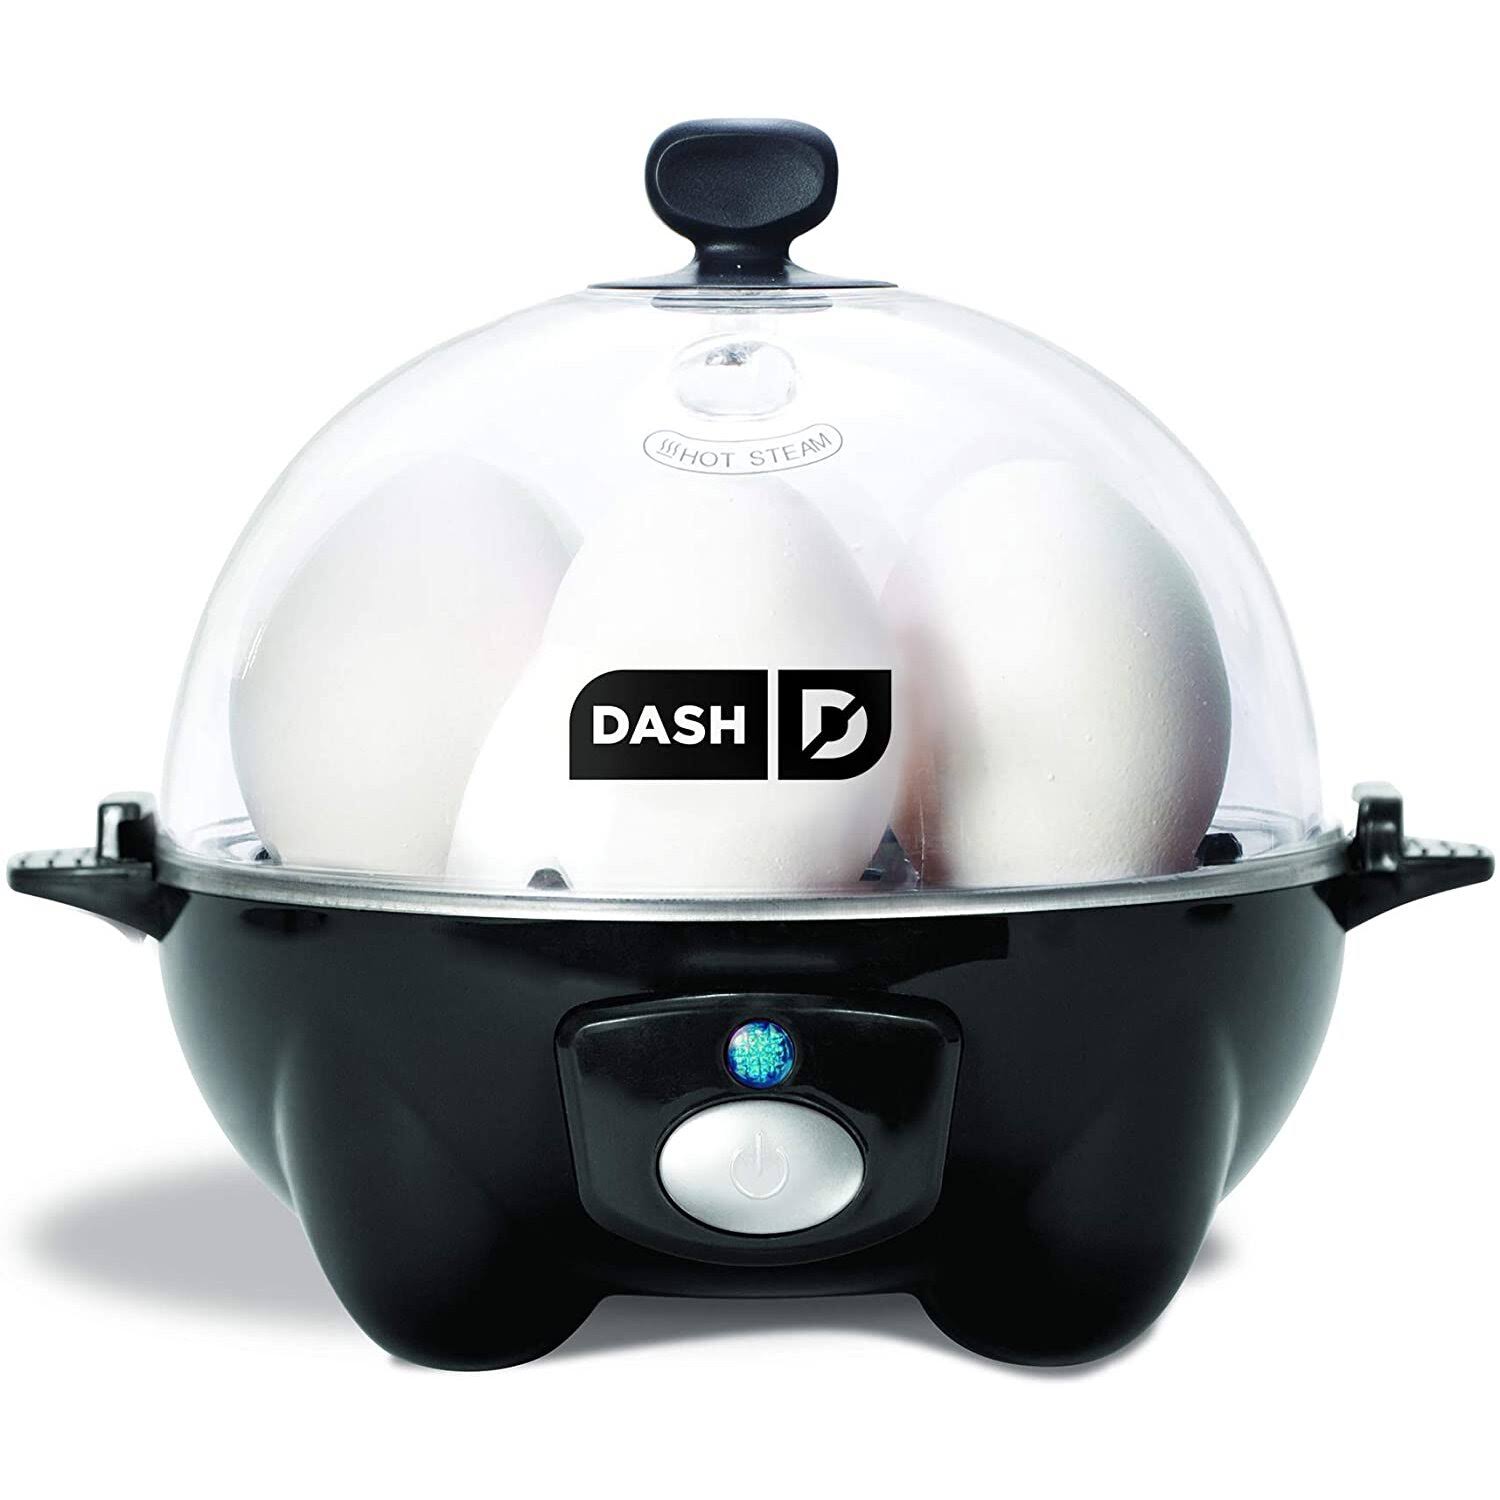 Dash Go Rapid Egg Cooker - Black